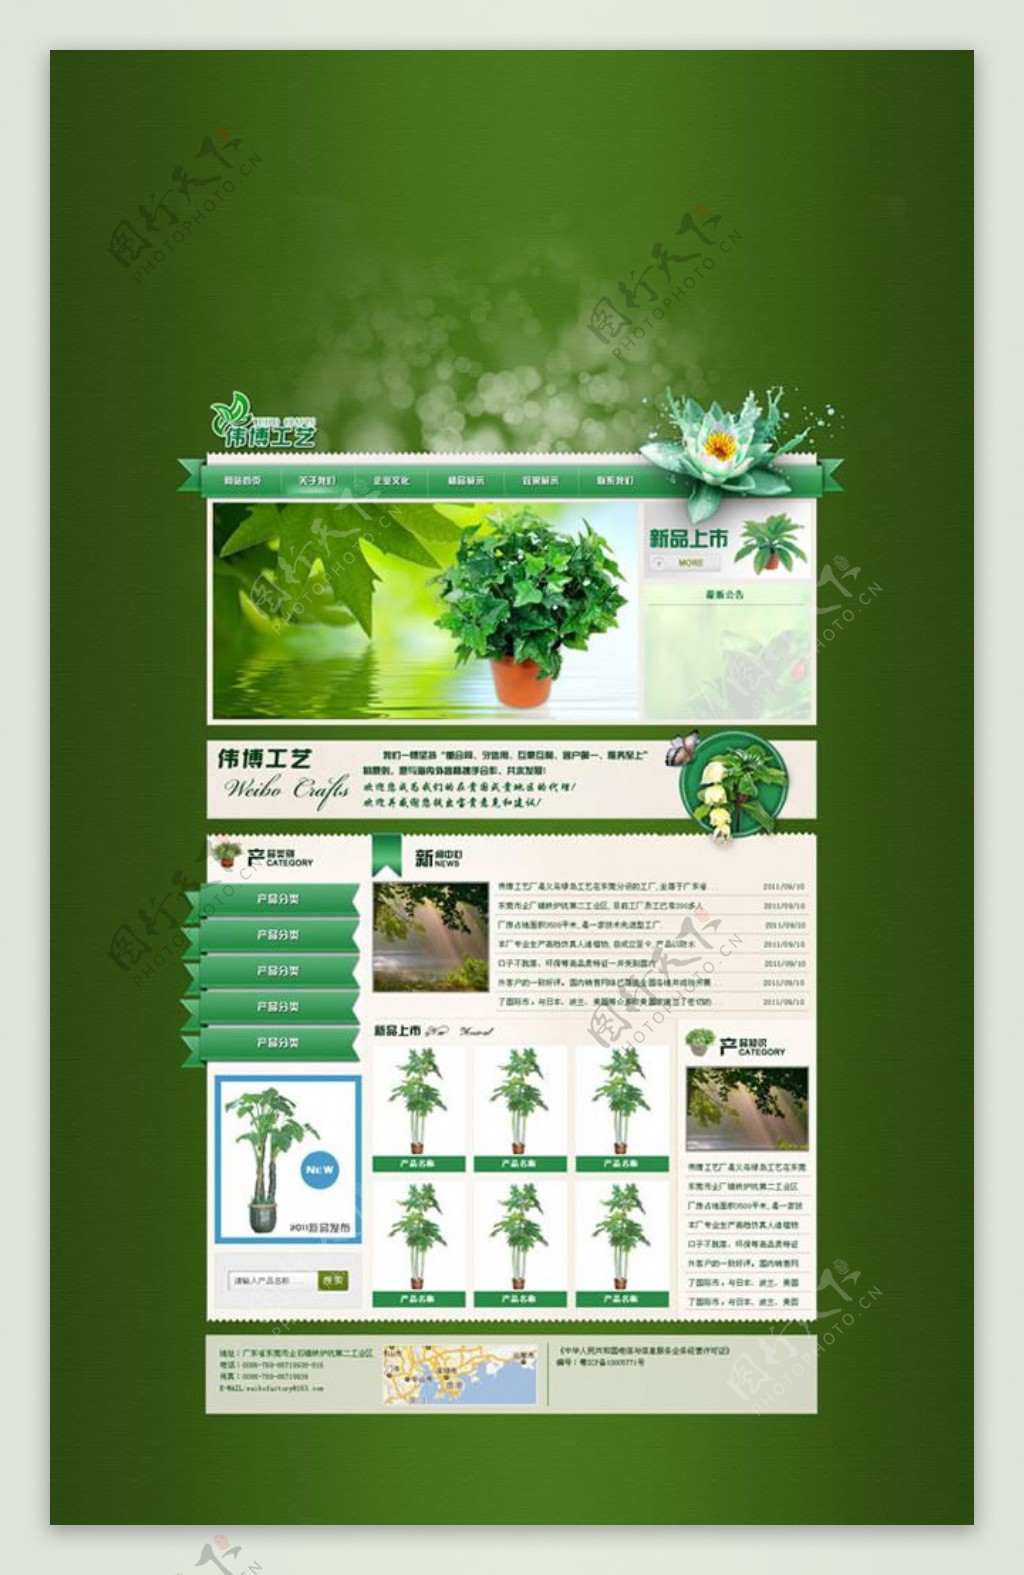 绿色花卉种植网站模板psd素材